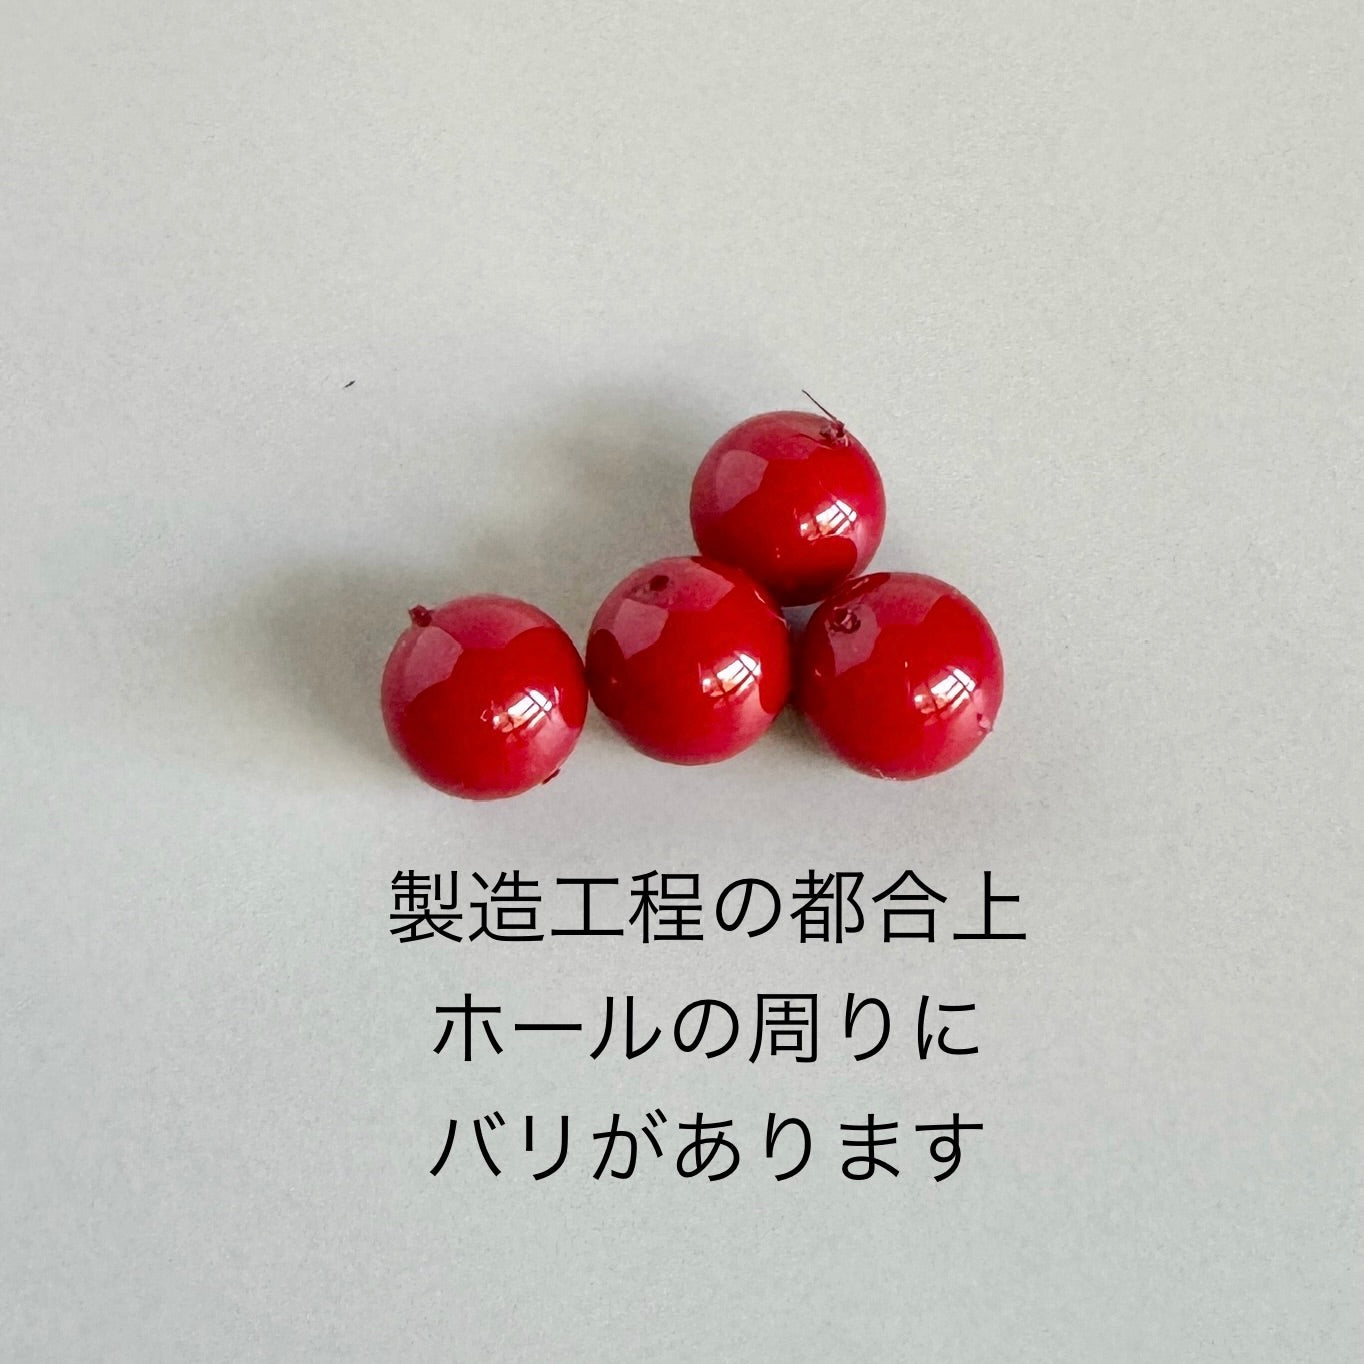 【Made in Japan 】日本製ガラスビーズ【AKADAMA】(赤珠) 10mm 【10個 or 1連】